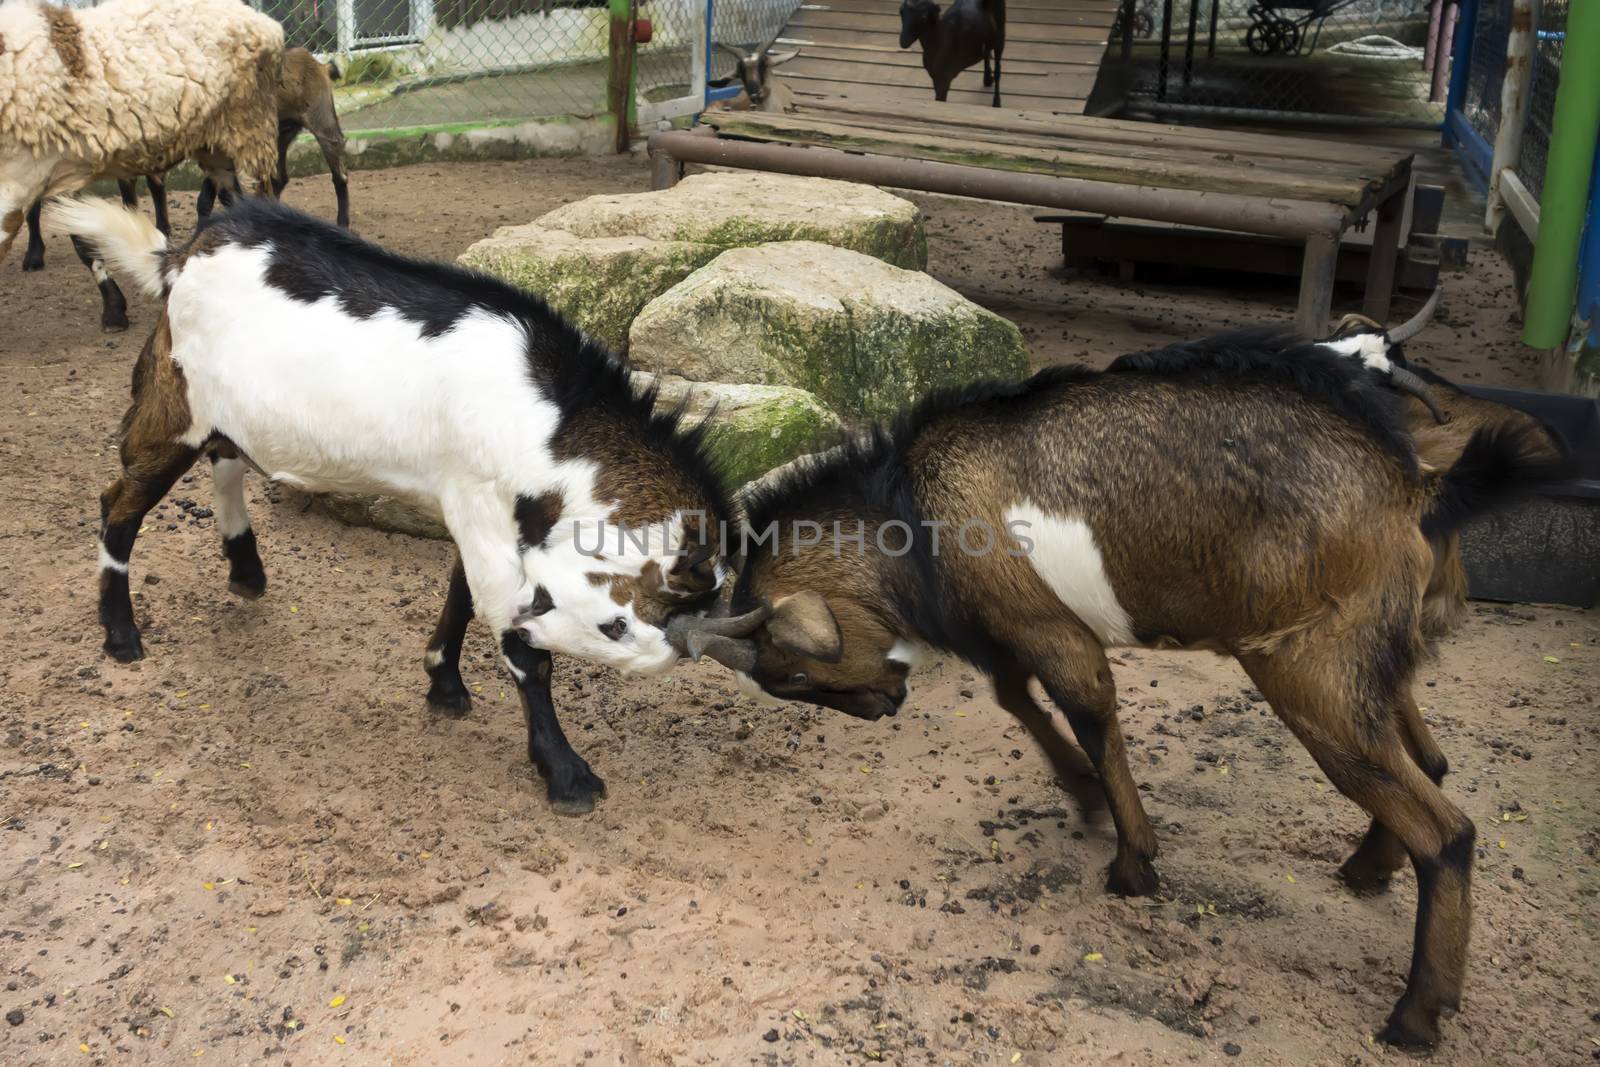 Goat Fight. Wood Goat Year Feb 19, 2015 - Feb  7, 2016